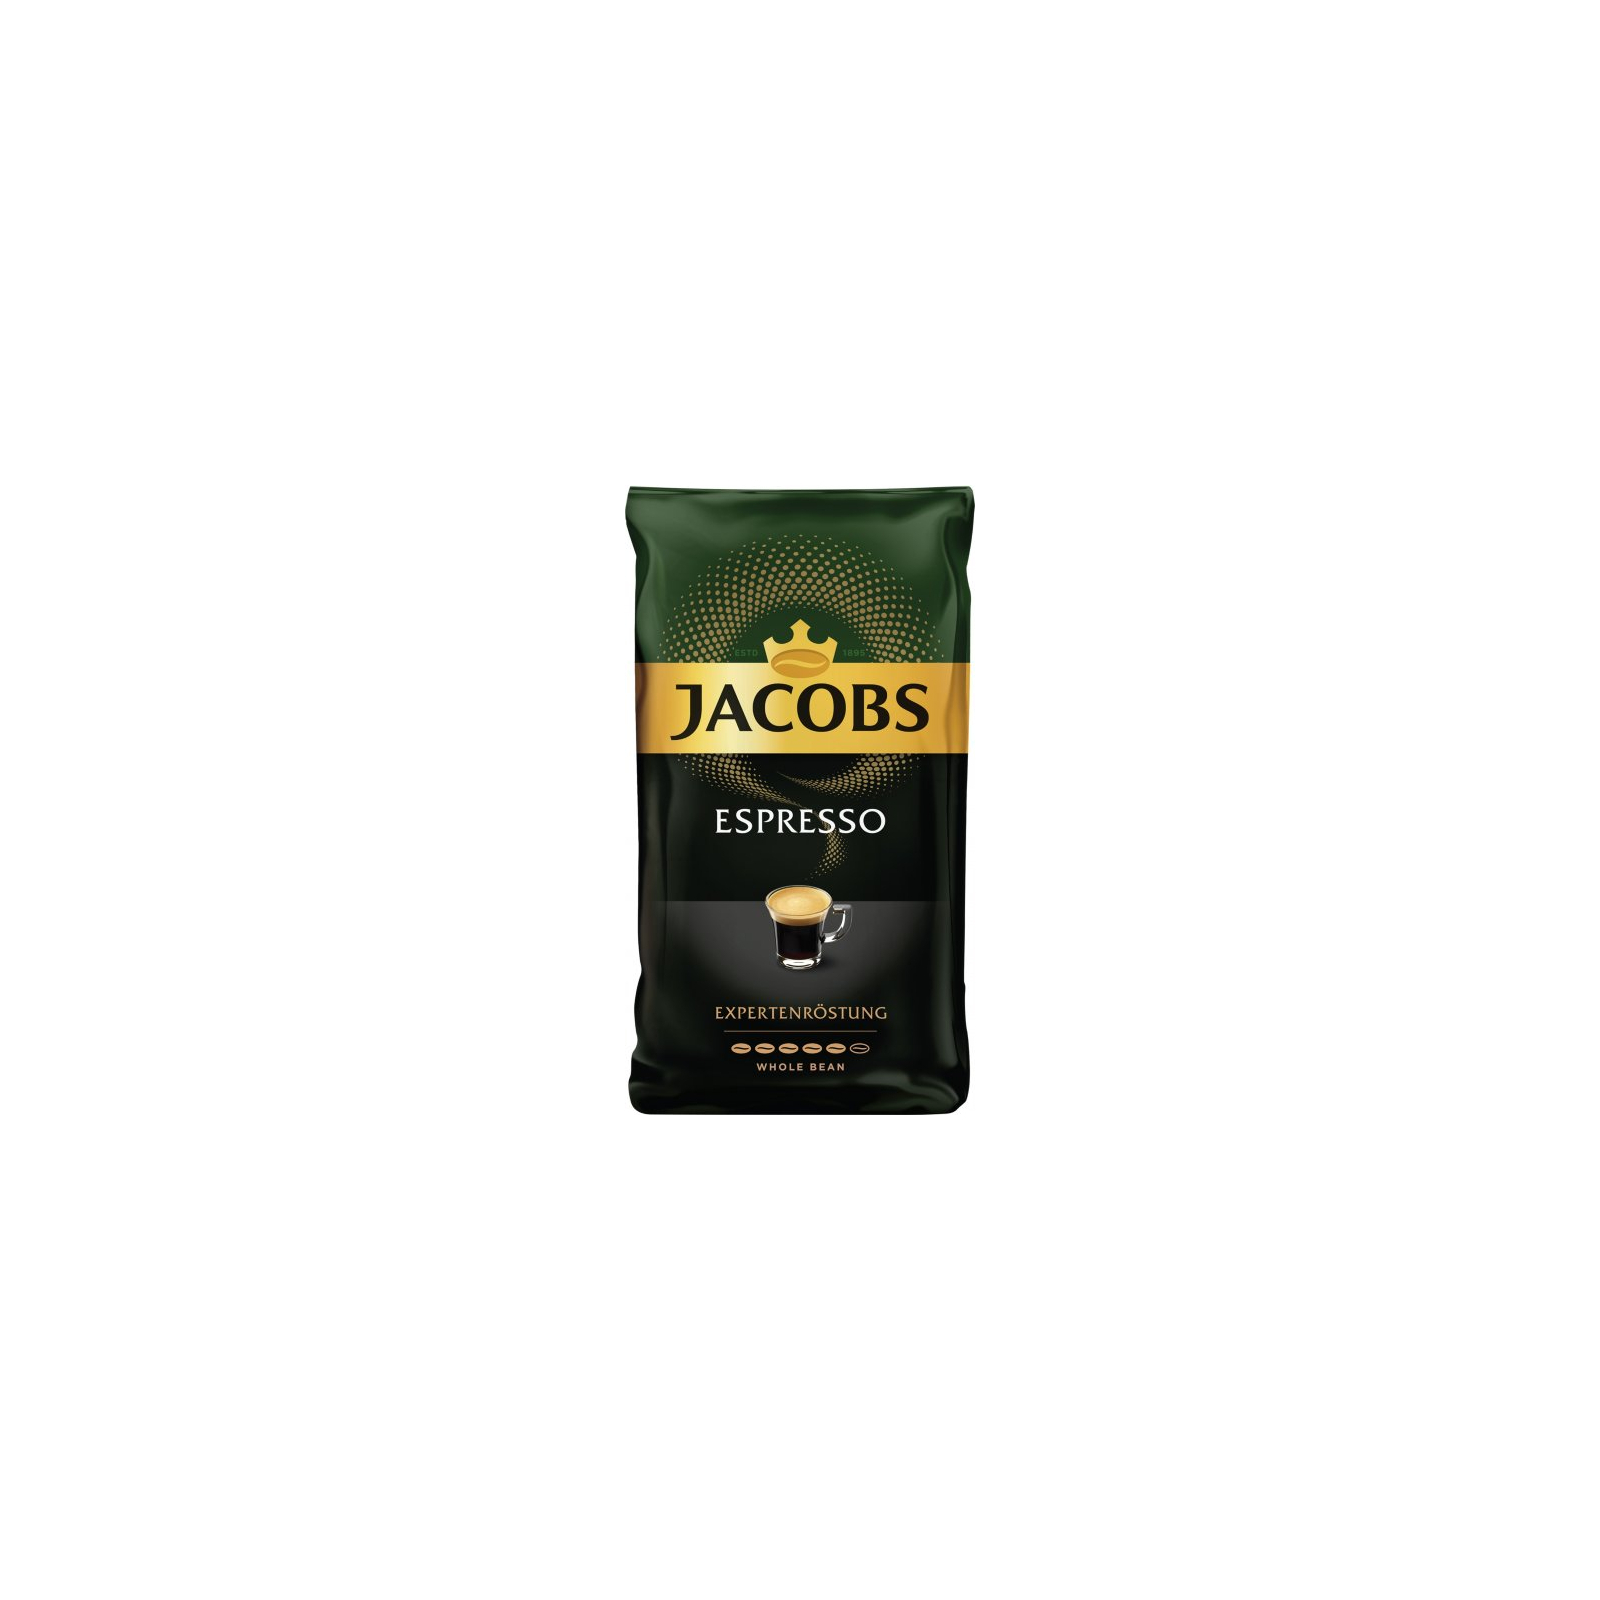 Кава JACOBS Espresso в зернах 1 кг (prpj.39187)